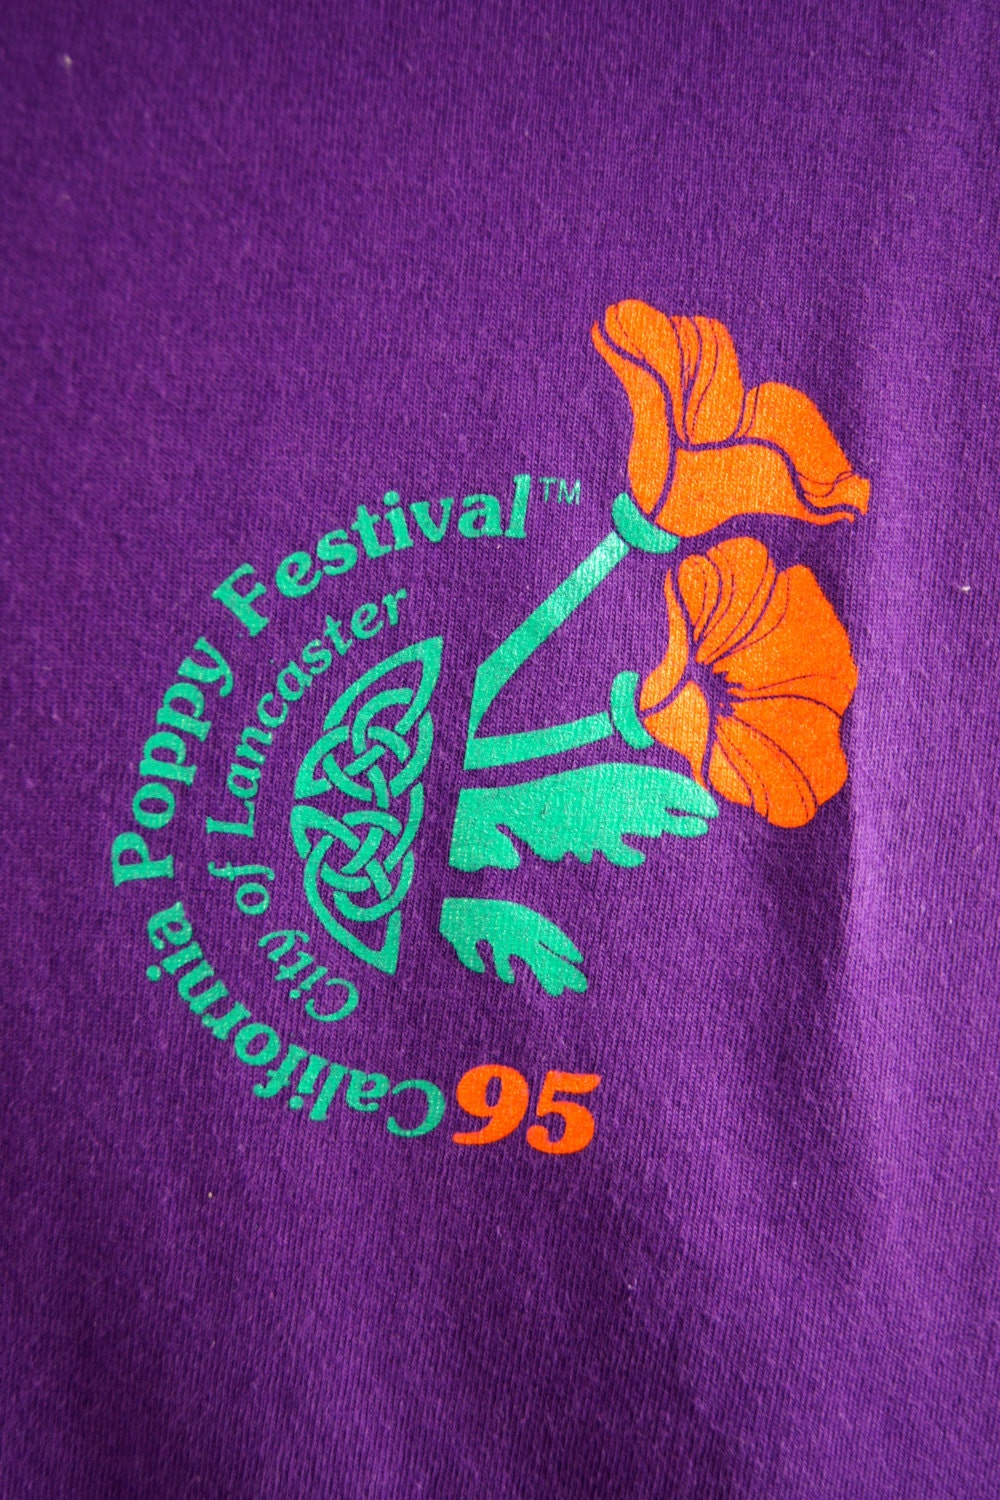 Vintage 1995 T-shirt California Poppy Festival City of - Etsy